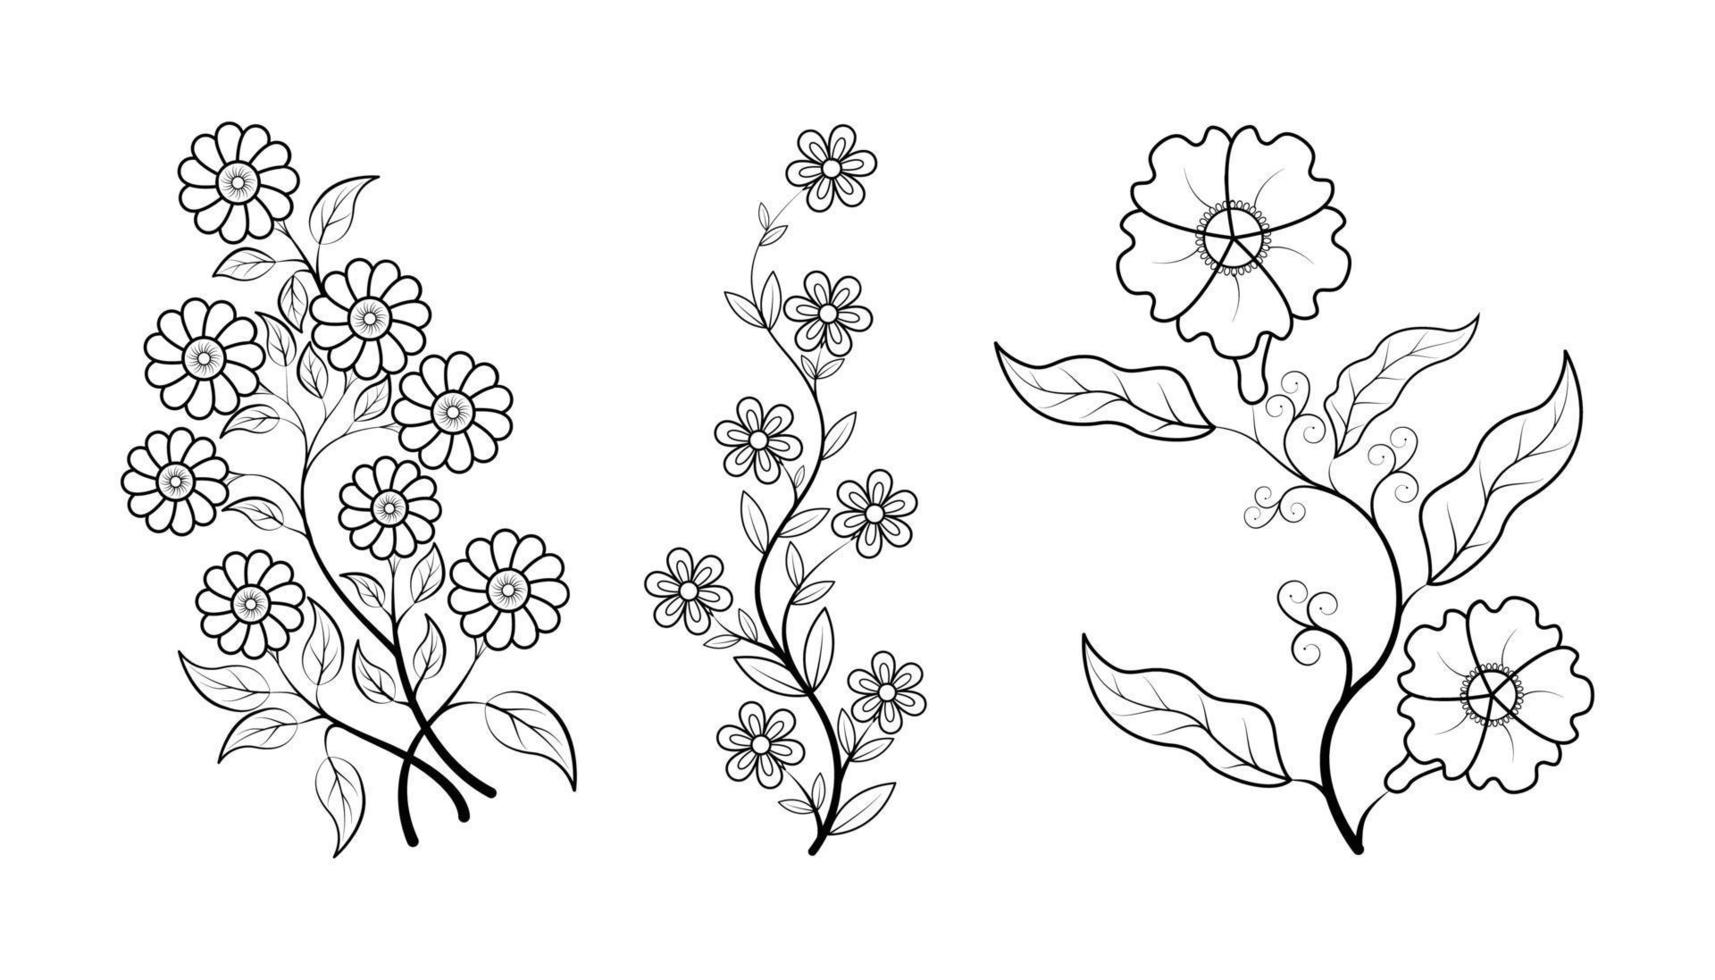 conjunto de páginas para colorear de flores simples dibujadas a mano con líneas florales para niños y adultos vector